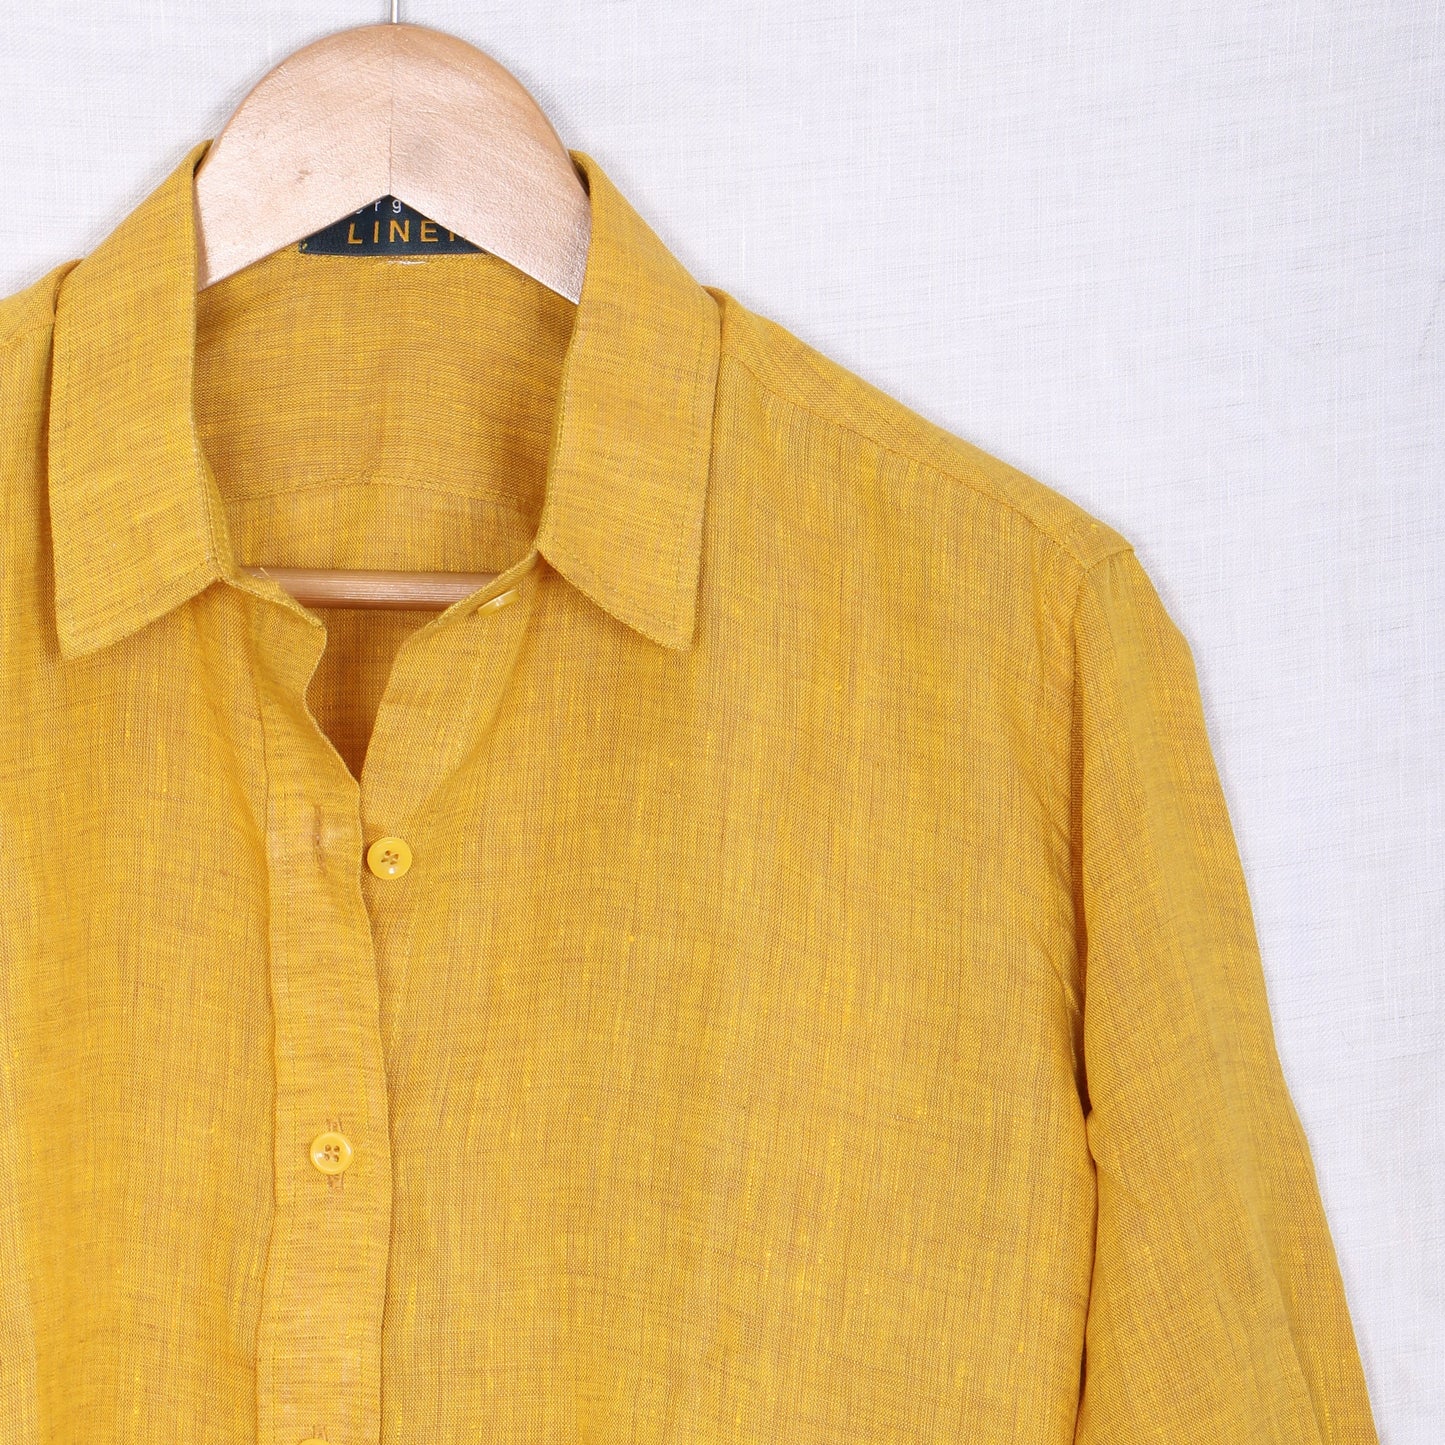 JAZZ Classic Linen Shirt for Men - Vintage Colors - OrganoLinen